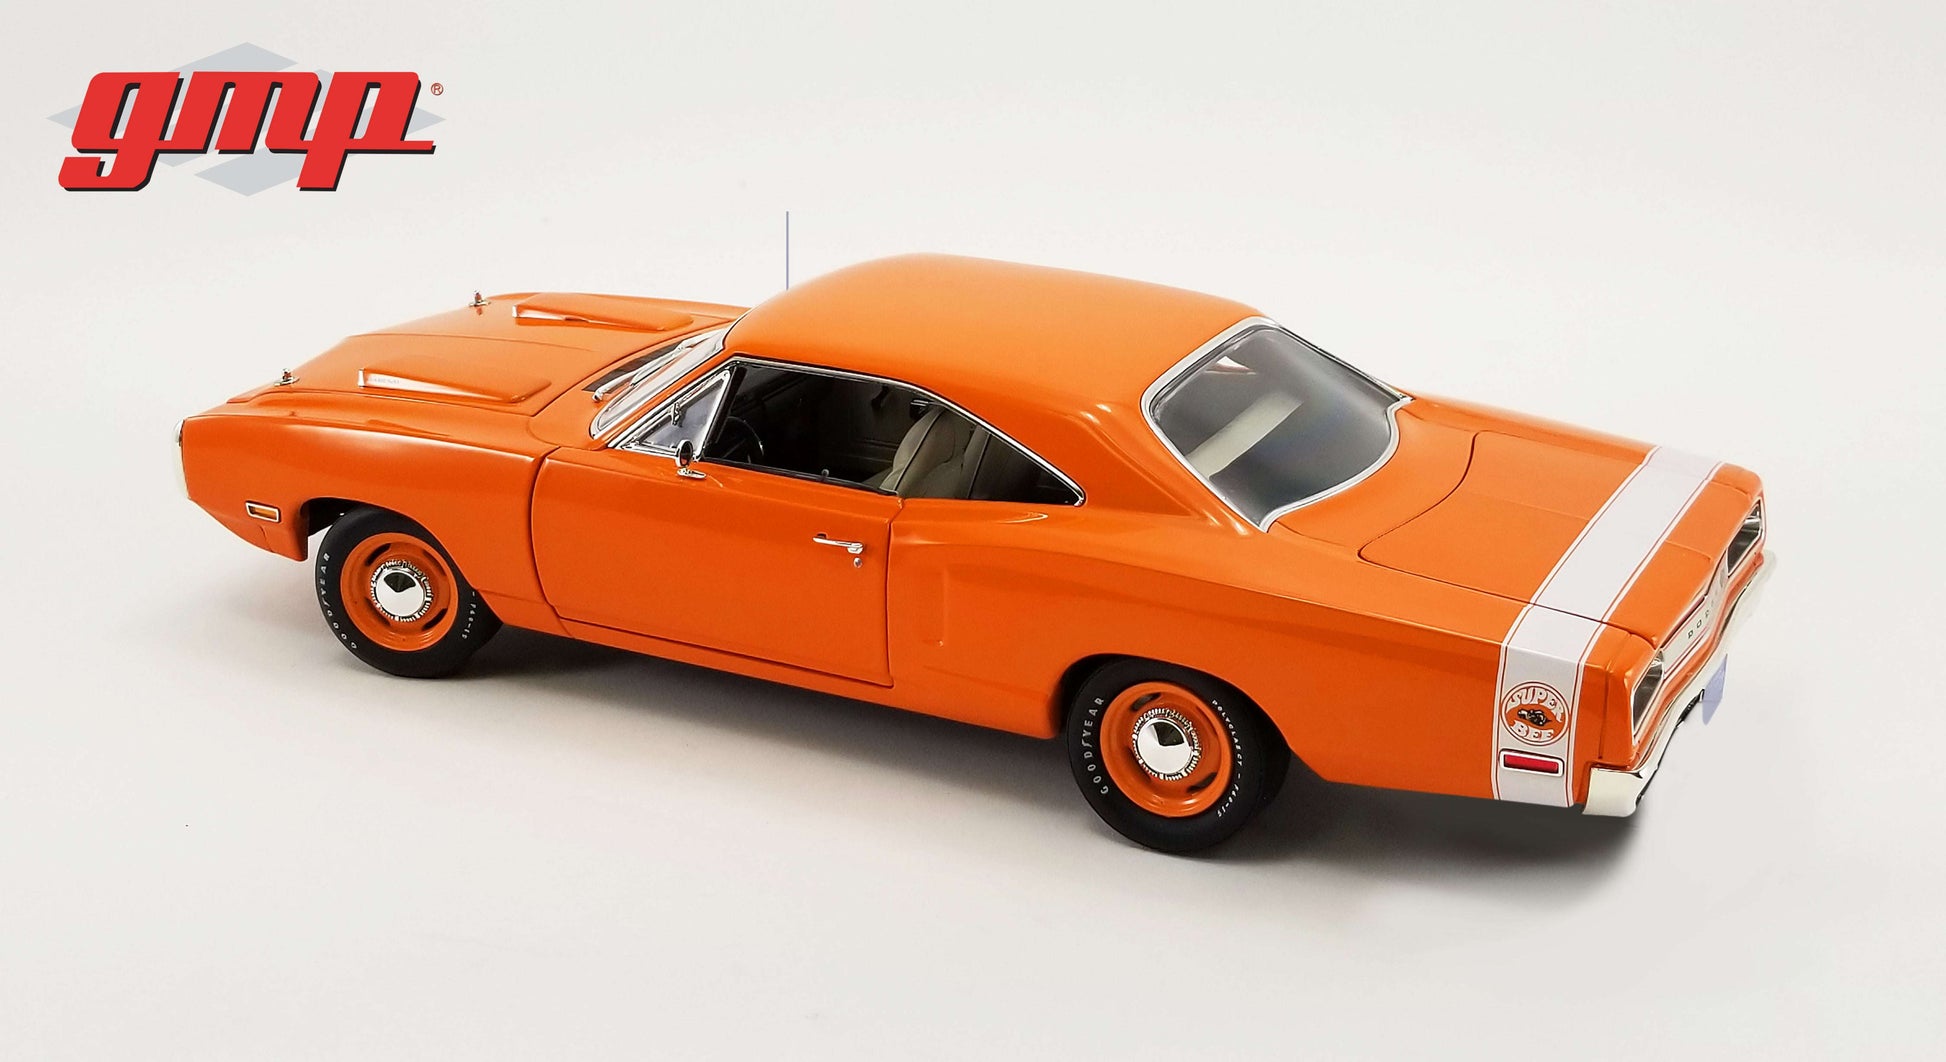 1970 Dodge Coronet Super Bee - Go Mango 1/18 1/18 modellino da collezione 237 lacasadelmodellismo